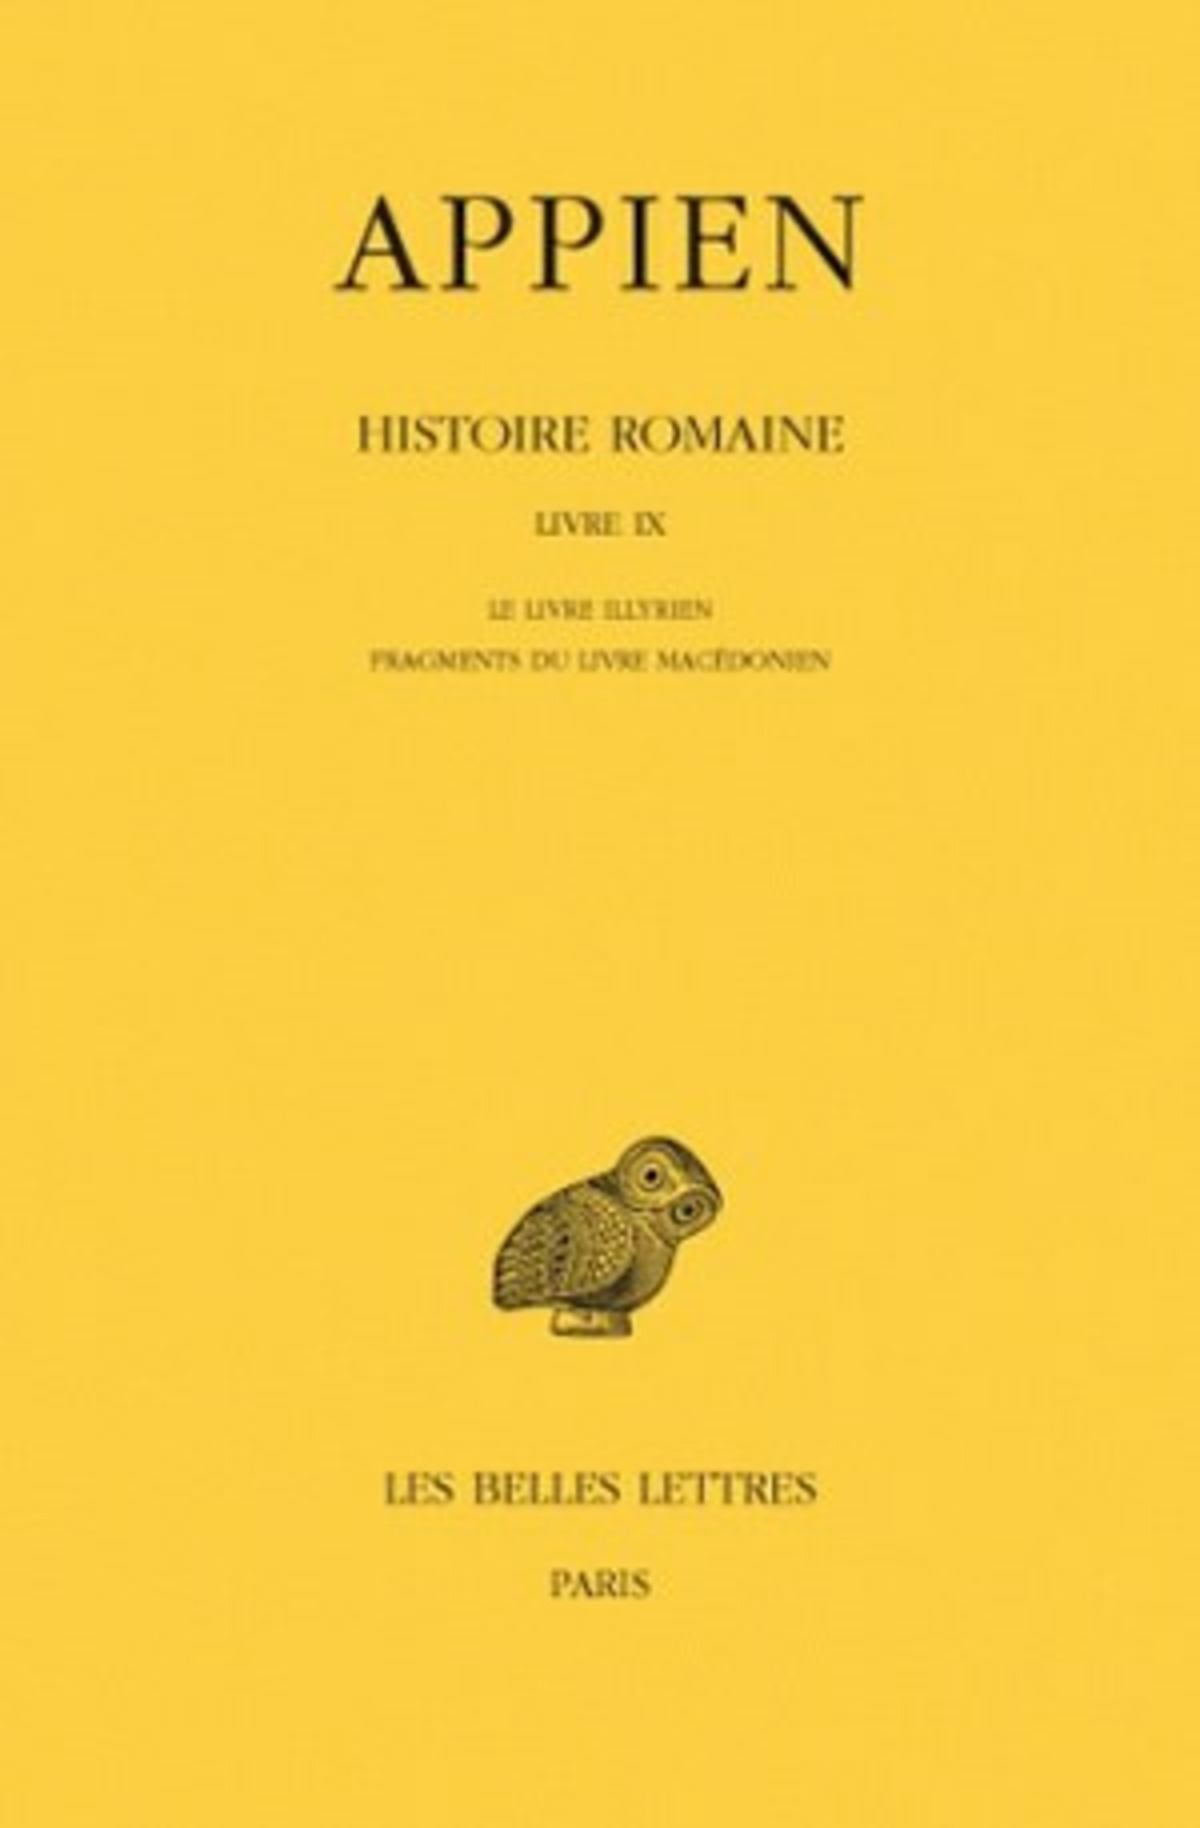 Histoire romaine. Tome V, Livre IX: Le Livre illyrien - Fragments du Livre macédonien